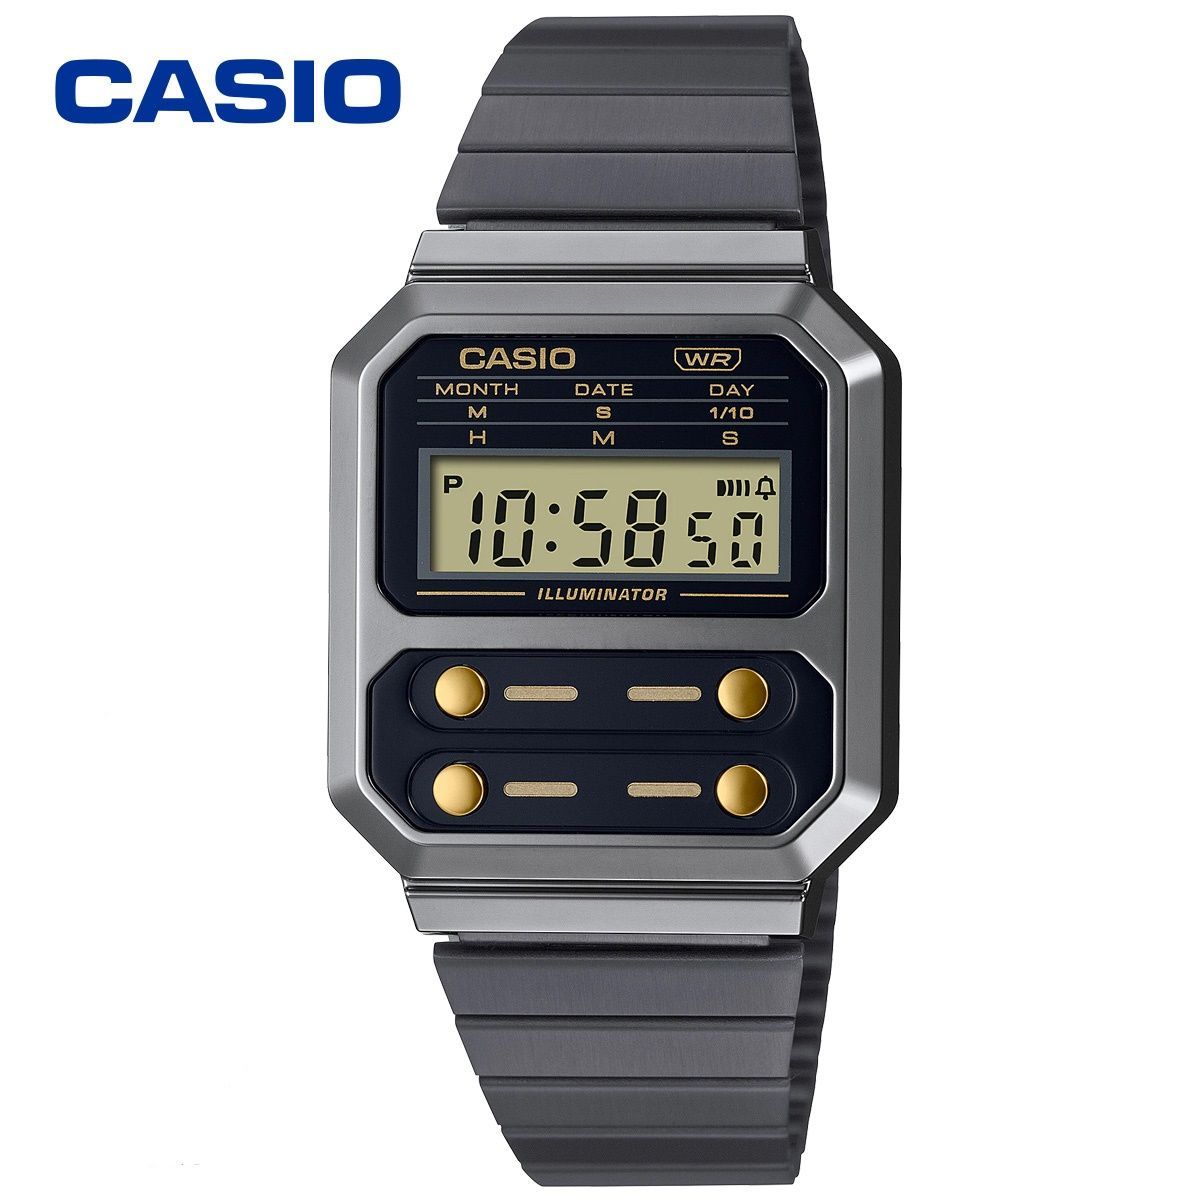 カシオ A100WEGG-1A2 復刻版 腕時計 ガンメタル ブラック ゴールド-0